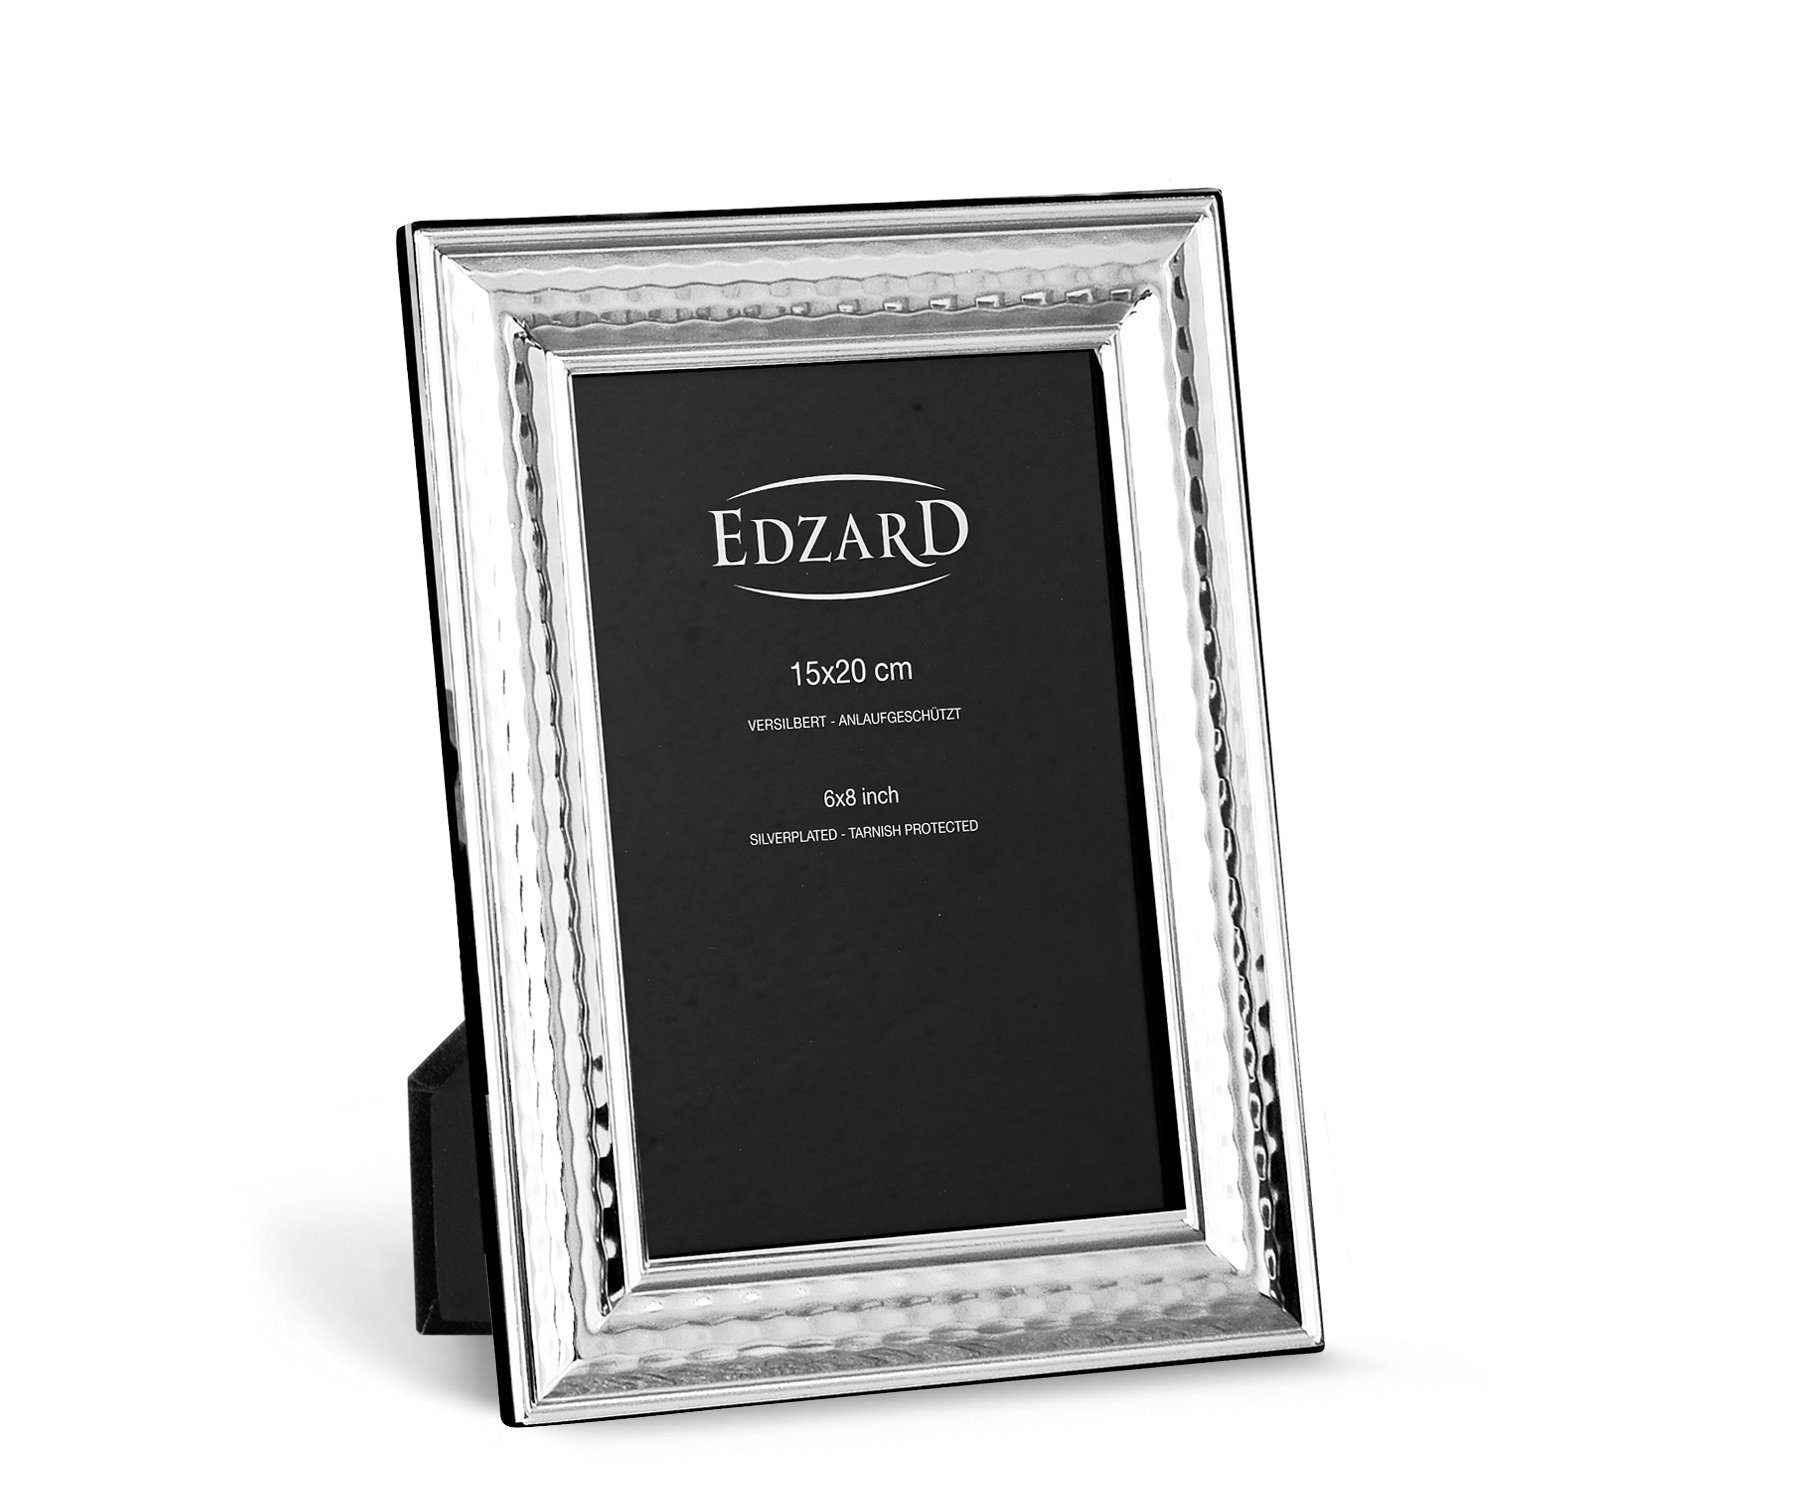 EDZARD Bilderrahmen Urbino, versilbert und anlaufgeschützt, für 15x20 cm Foto | Einzelrahmen